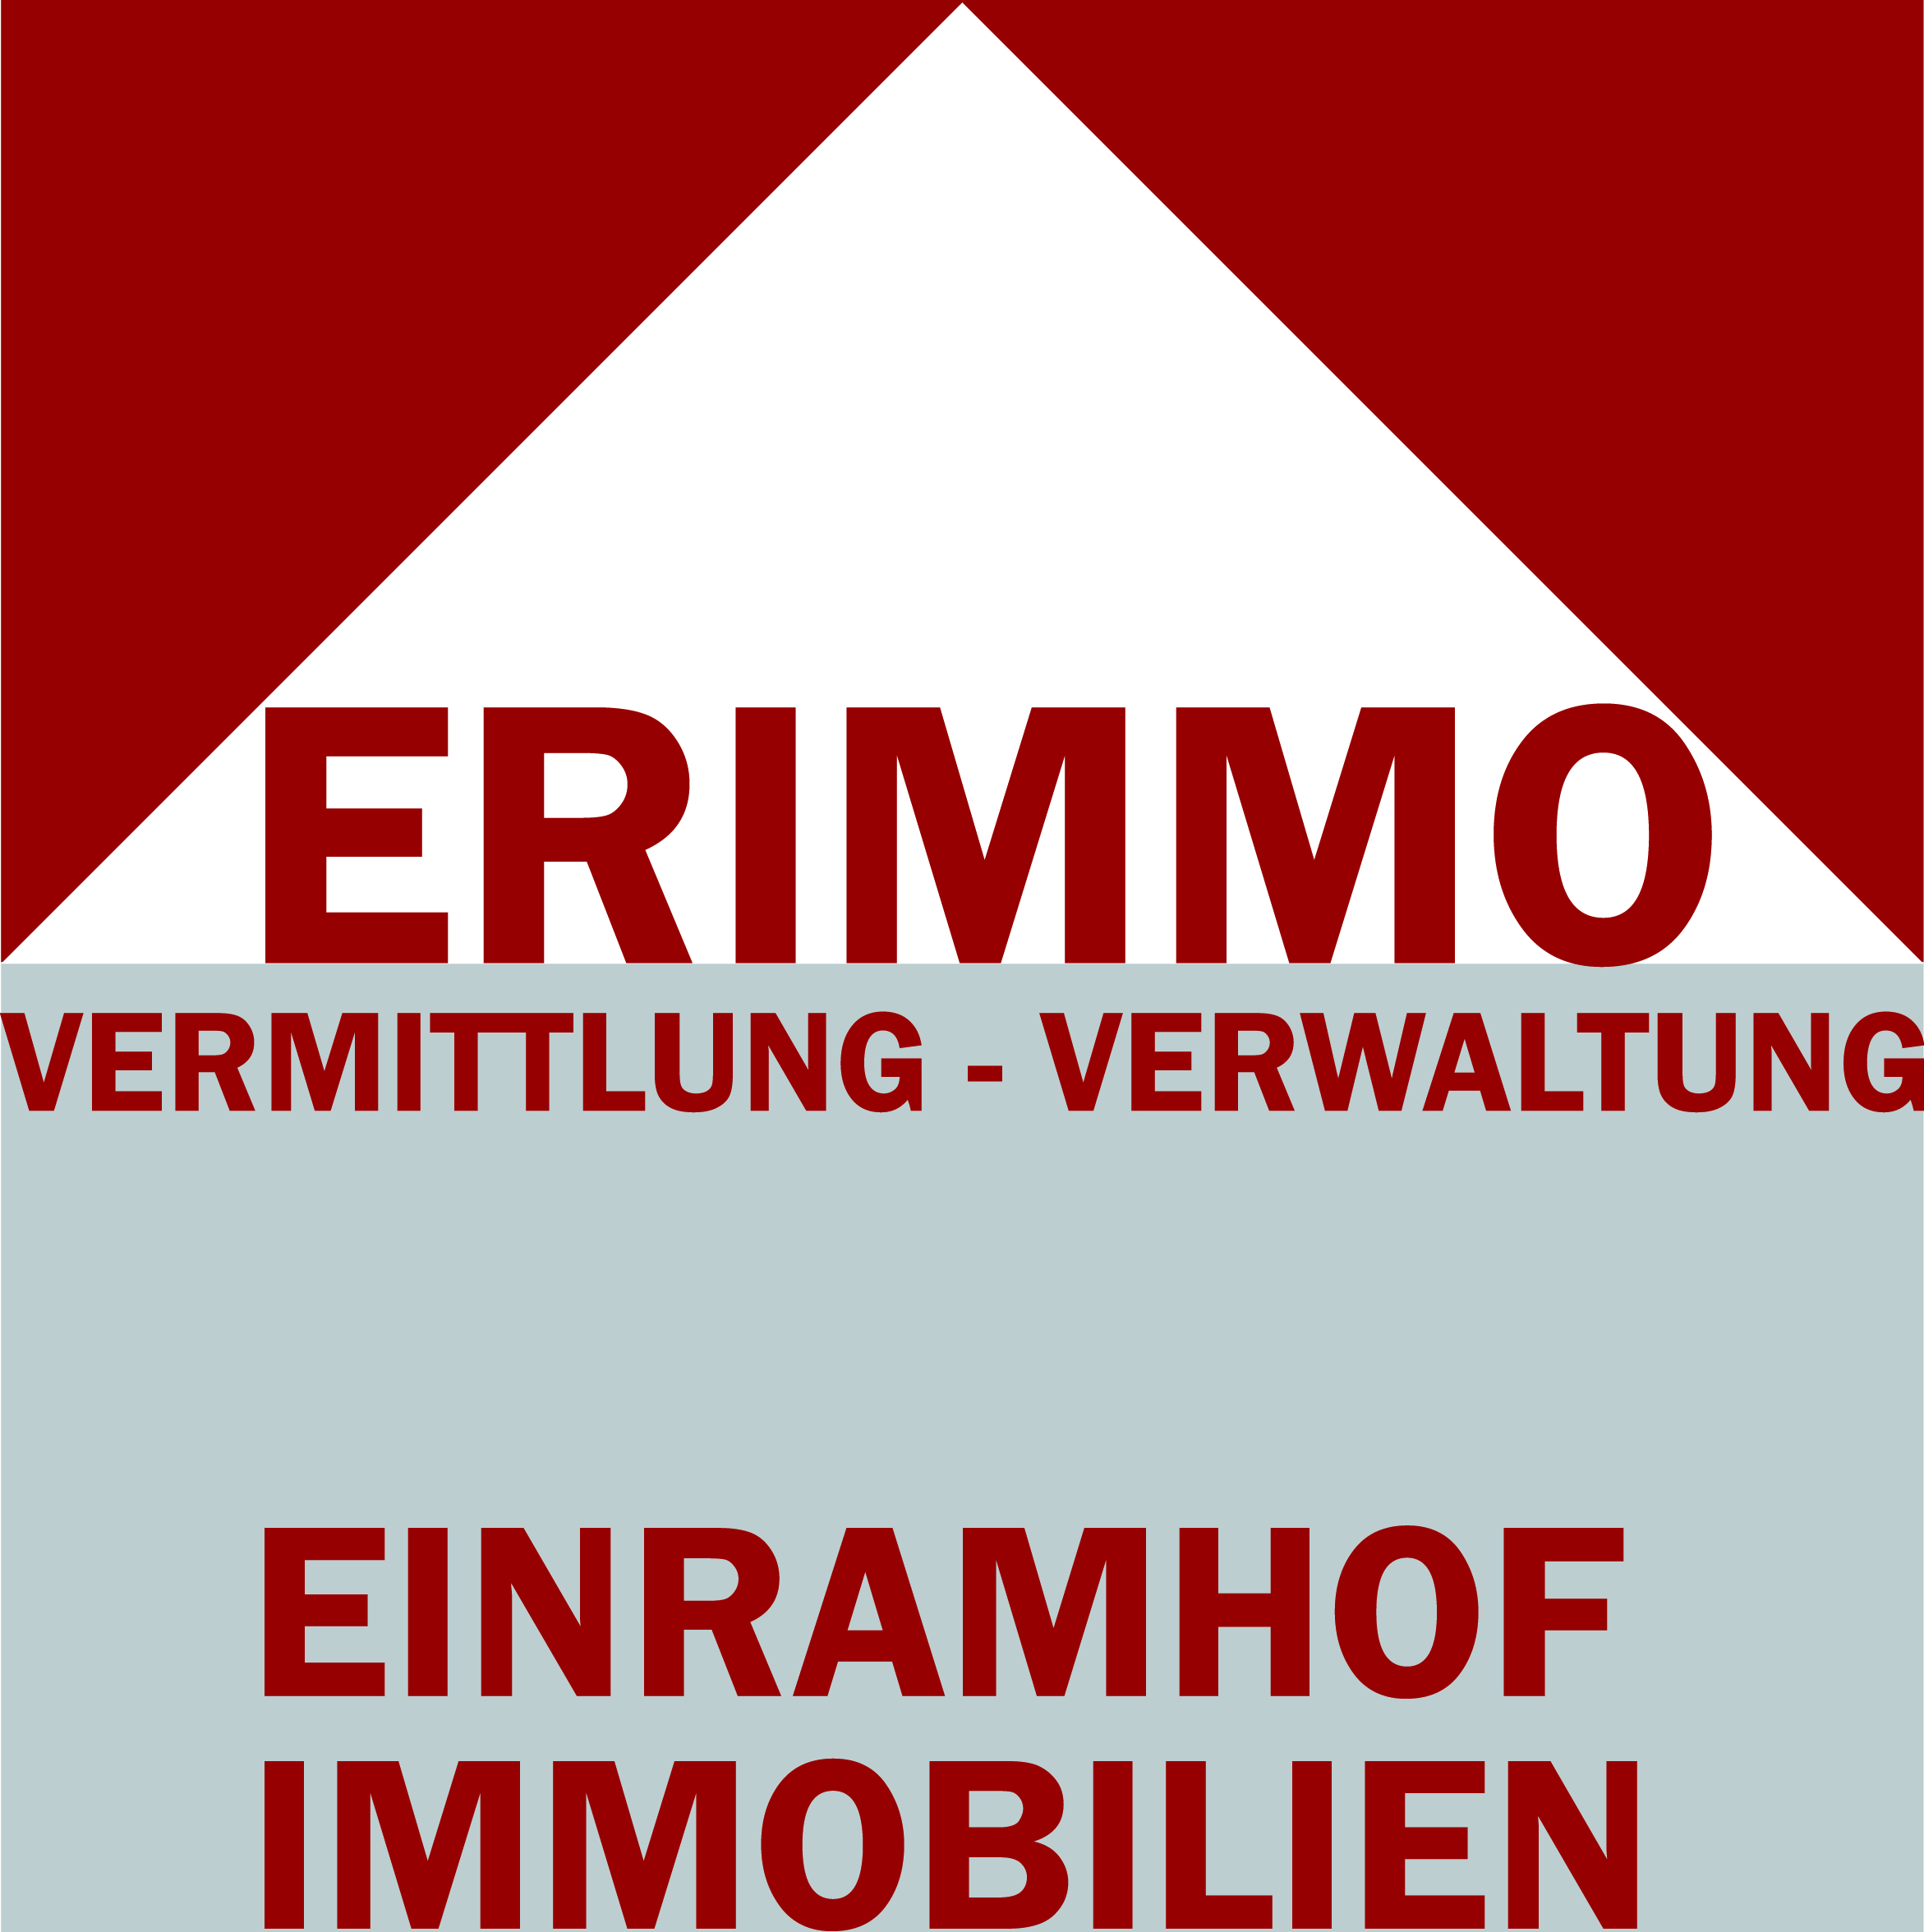 Erimmo | Einramhof Immobilien | Verwaltung | Vermittlung | Beratung | Logo